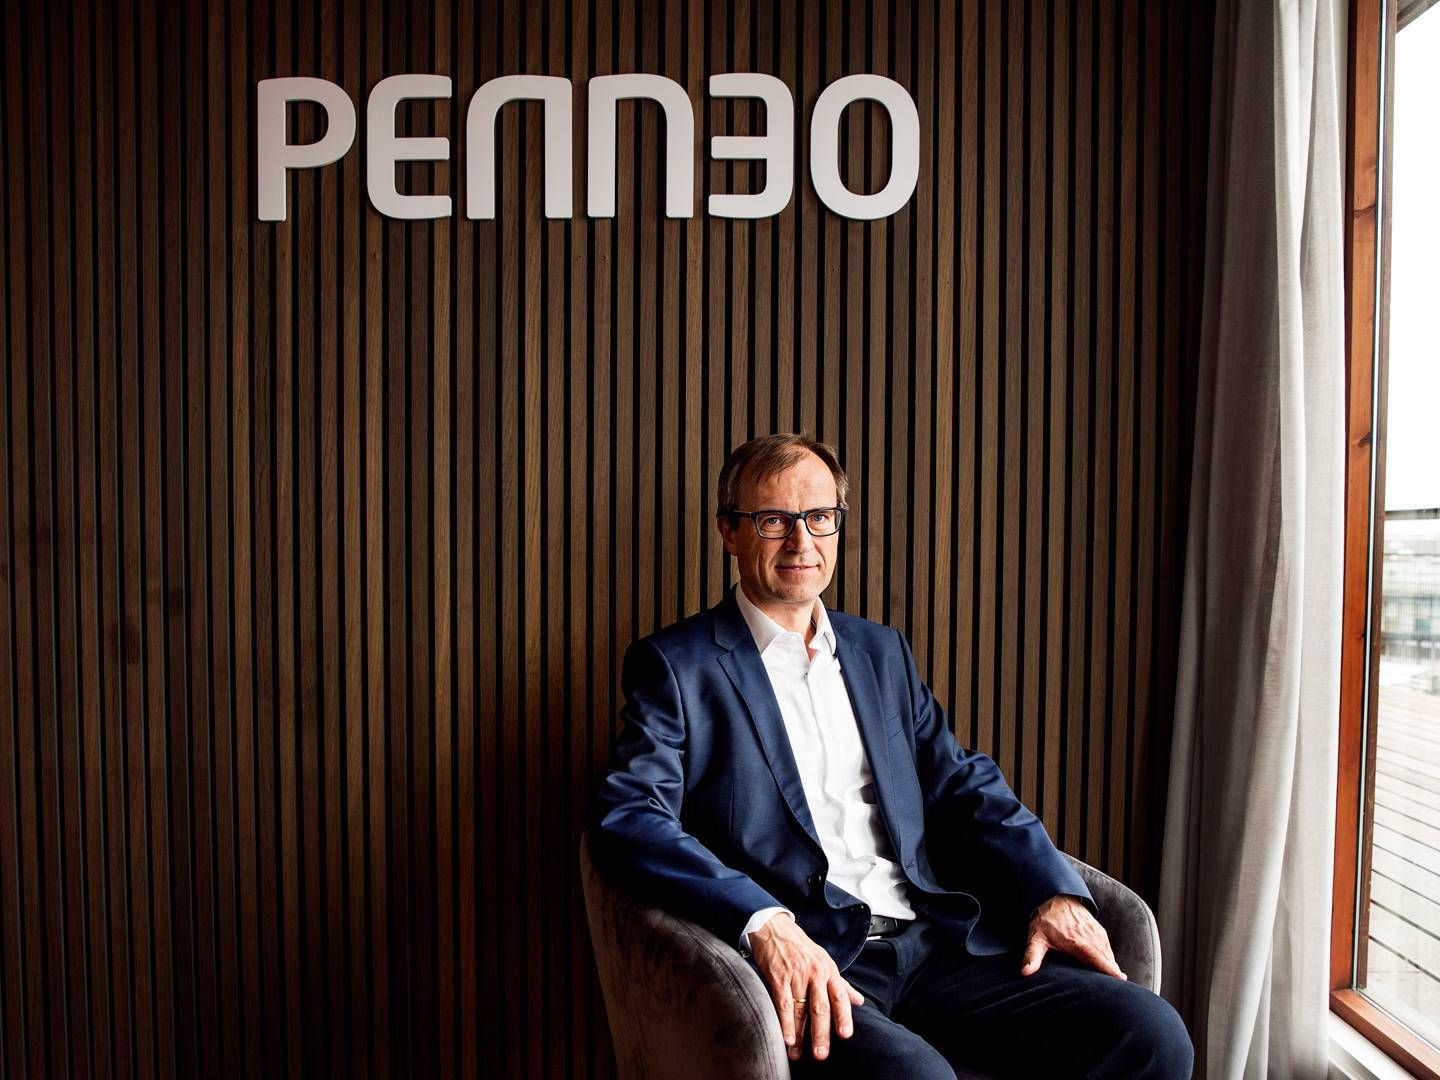 Aftalen cementerer Penneos markedsledende position, mener virksomhedens adm. direktør Christian Stendevad. | Foto: Penneo/PR